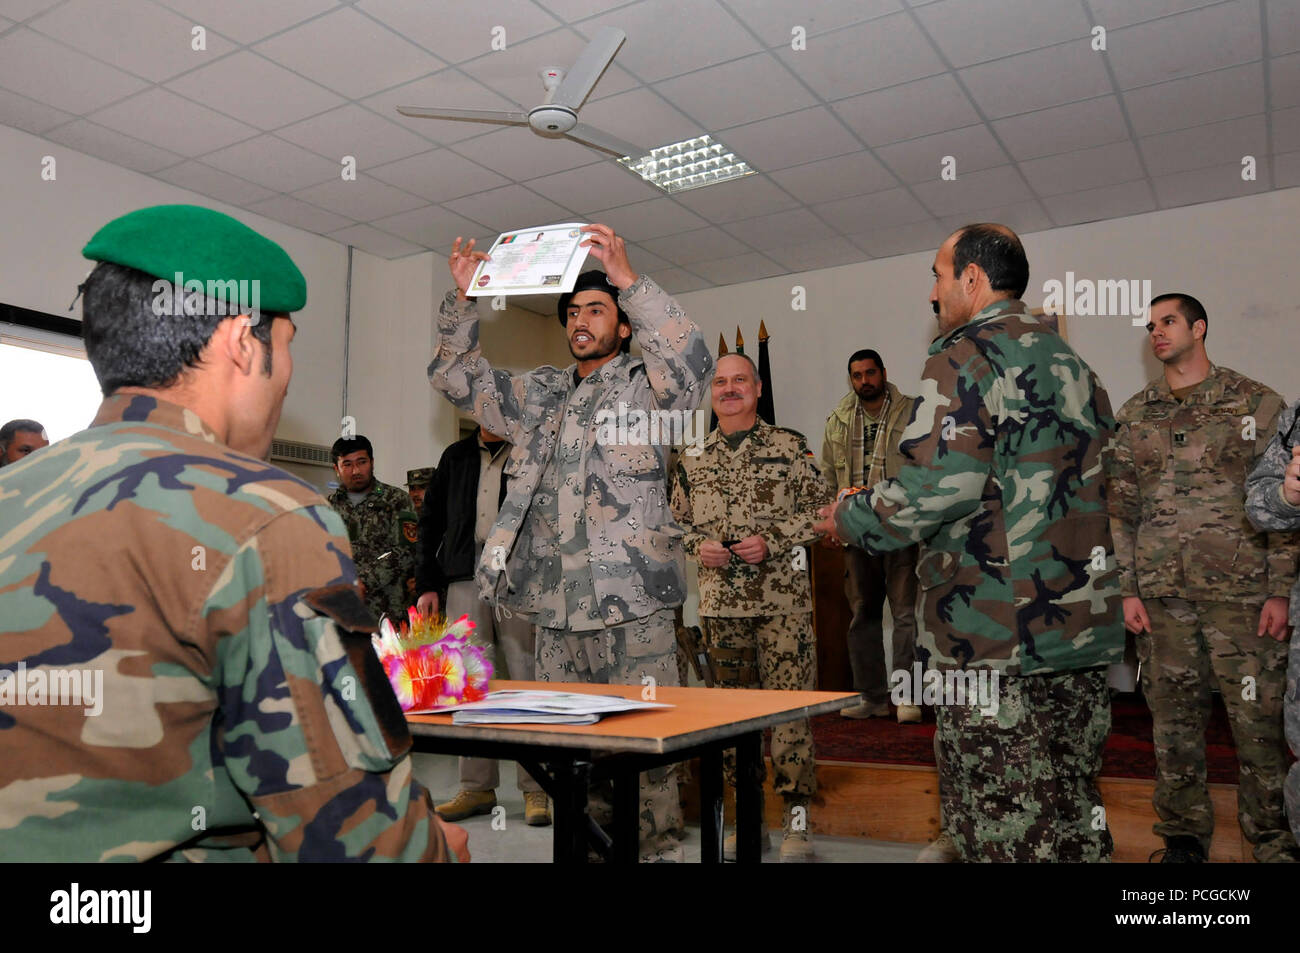 Un soldado del Ejército Nacional Afgano muestra con orgullo su certificado durante una ceremonia de graduación en la Escuela de Ingenieros del Ejército Nacional Afgano Spann cerca del campamento, el 15 de diciembre. Quince soldados afganos se graduó en la ceremonia y ahora puede llevar el parche de eliminación de artefactos explosivos y placas después de completar 22 semanas de intensas EOD y dispositivo explosivo improvisado derrotar a la formación. La Escuela de Ingenieros es el único en Afganistán que enseña los fundamentos de la EOD y IEDD afgana a las fuerzas de seguridad nacionales. La Fuerza Internacional de Asistencia para la seguridad en el Comando Regional Norte Nacional Afgano admite S Foto de stock